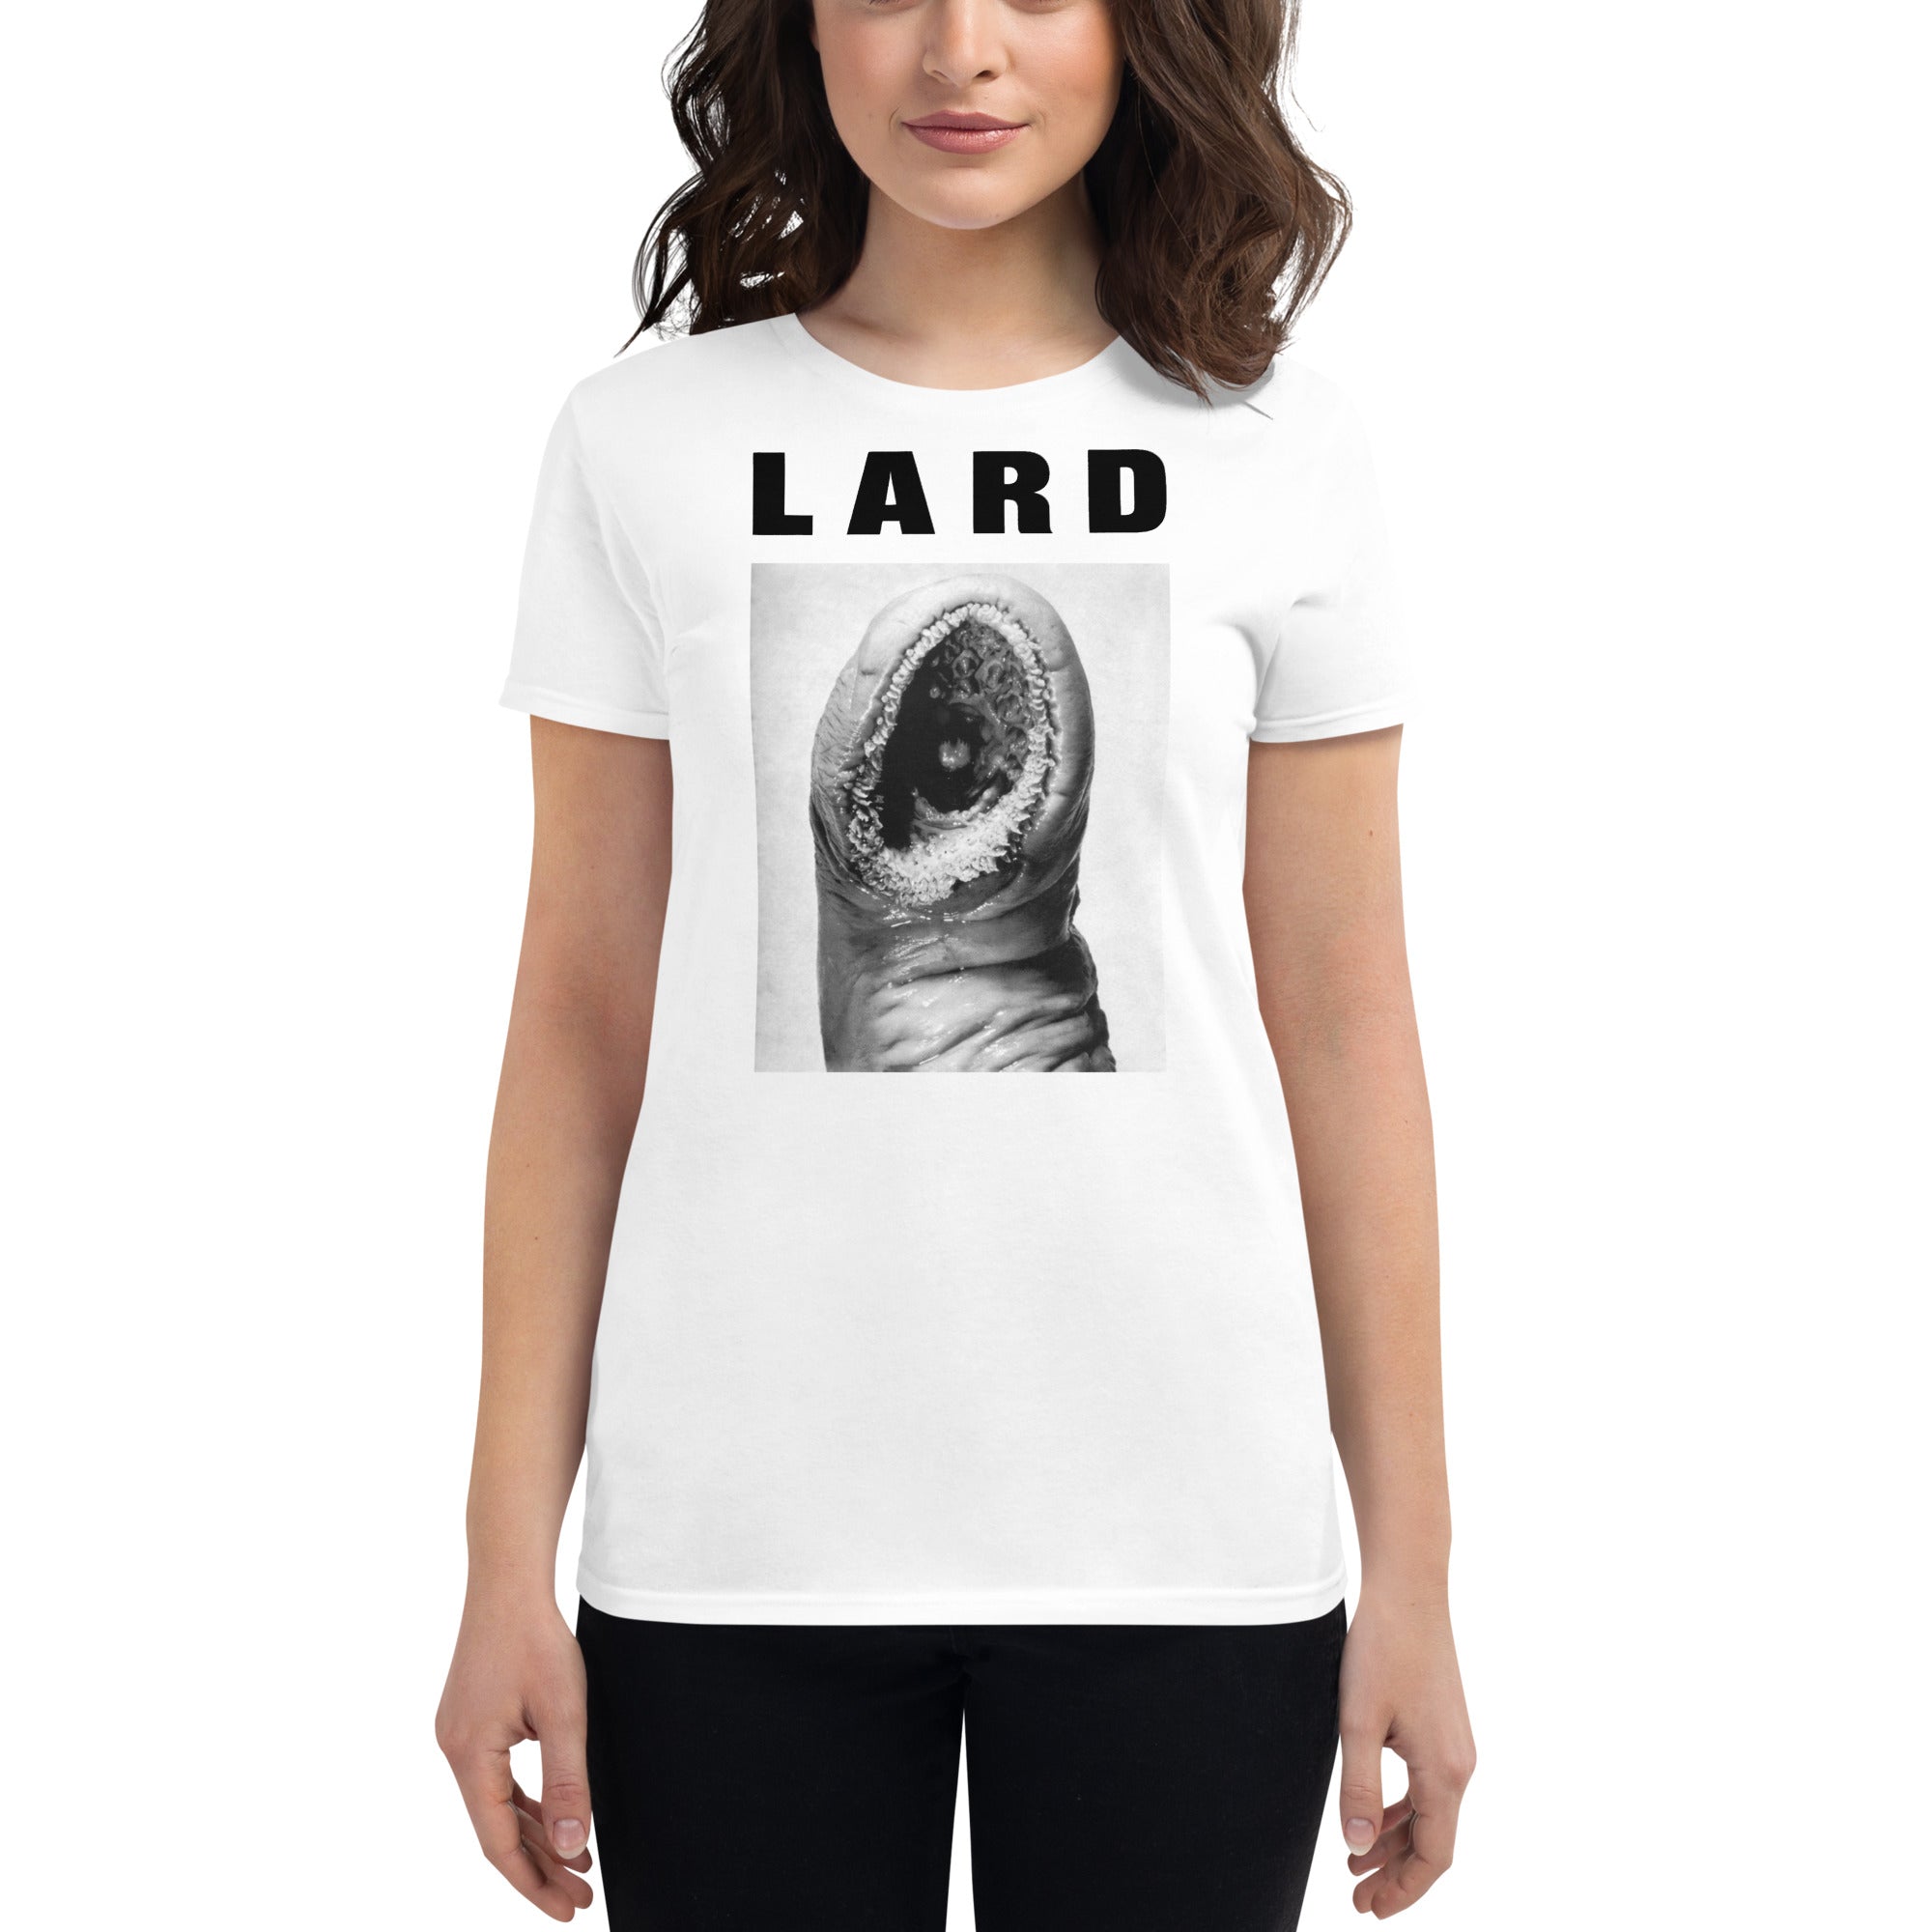 LARD "The Power Of Lard" Femme White T-Shirt